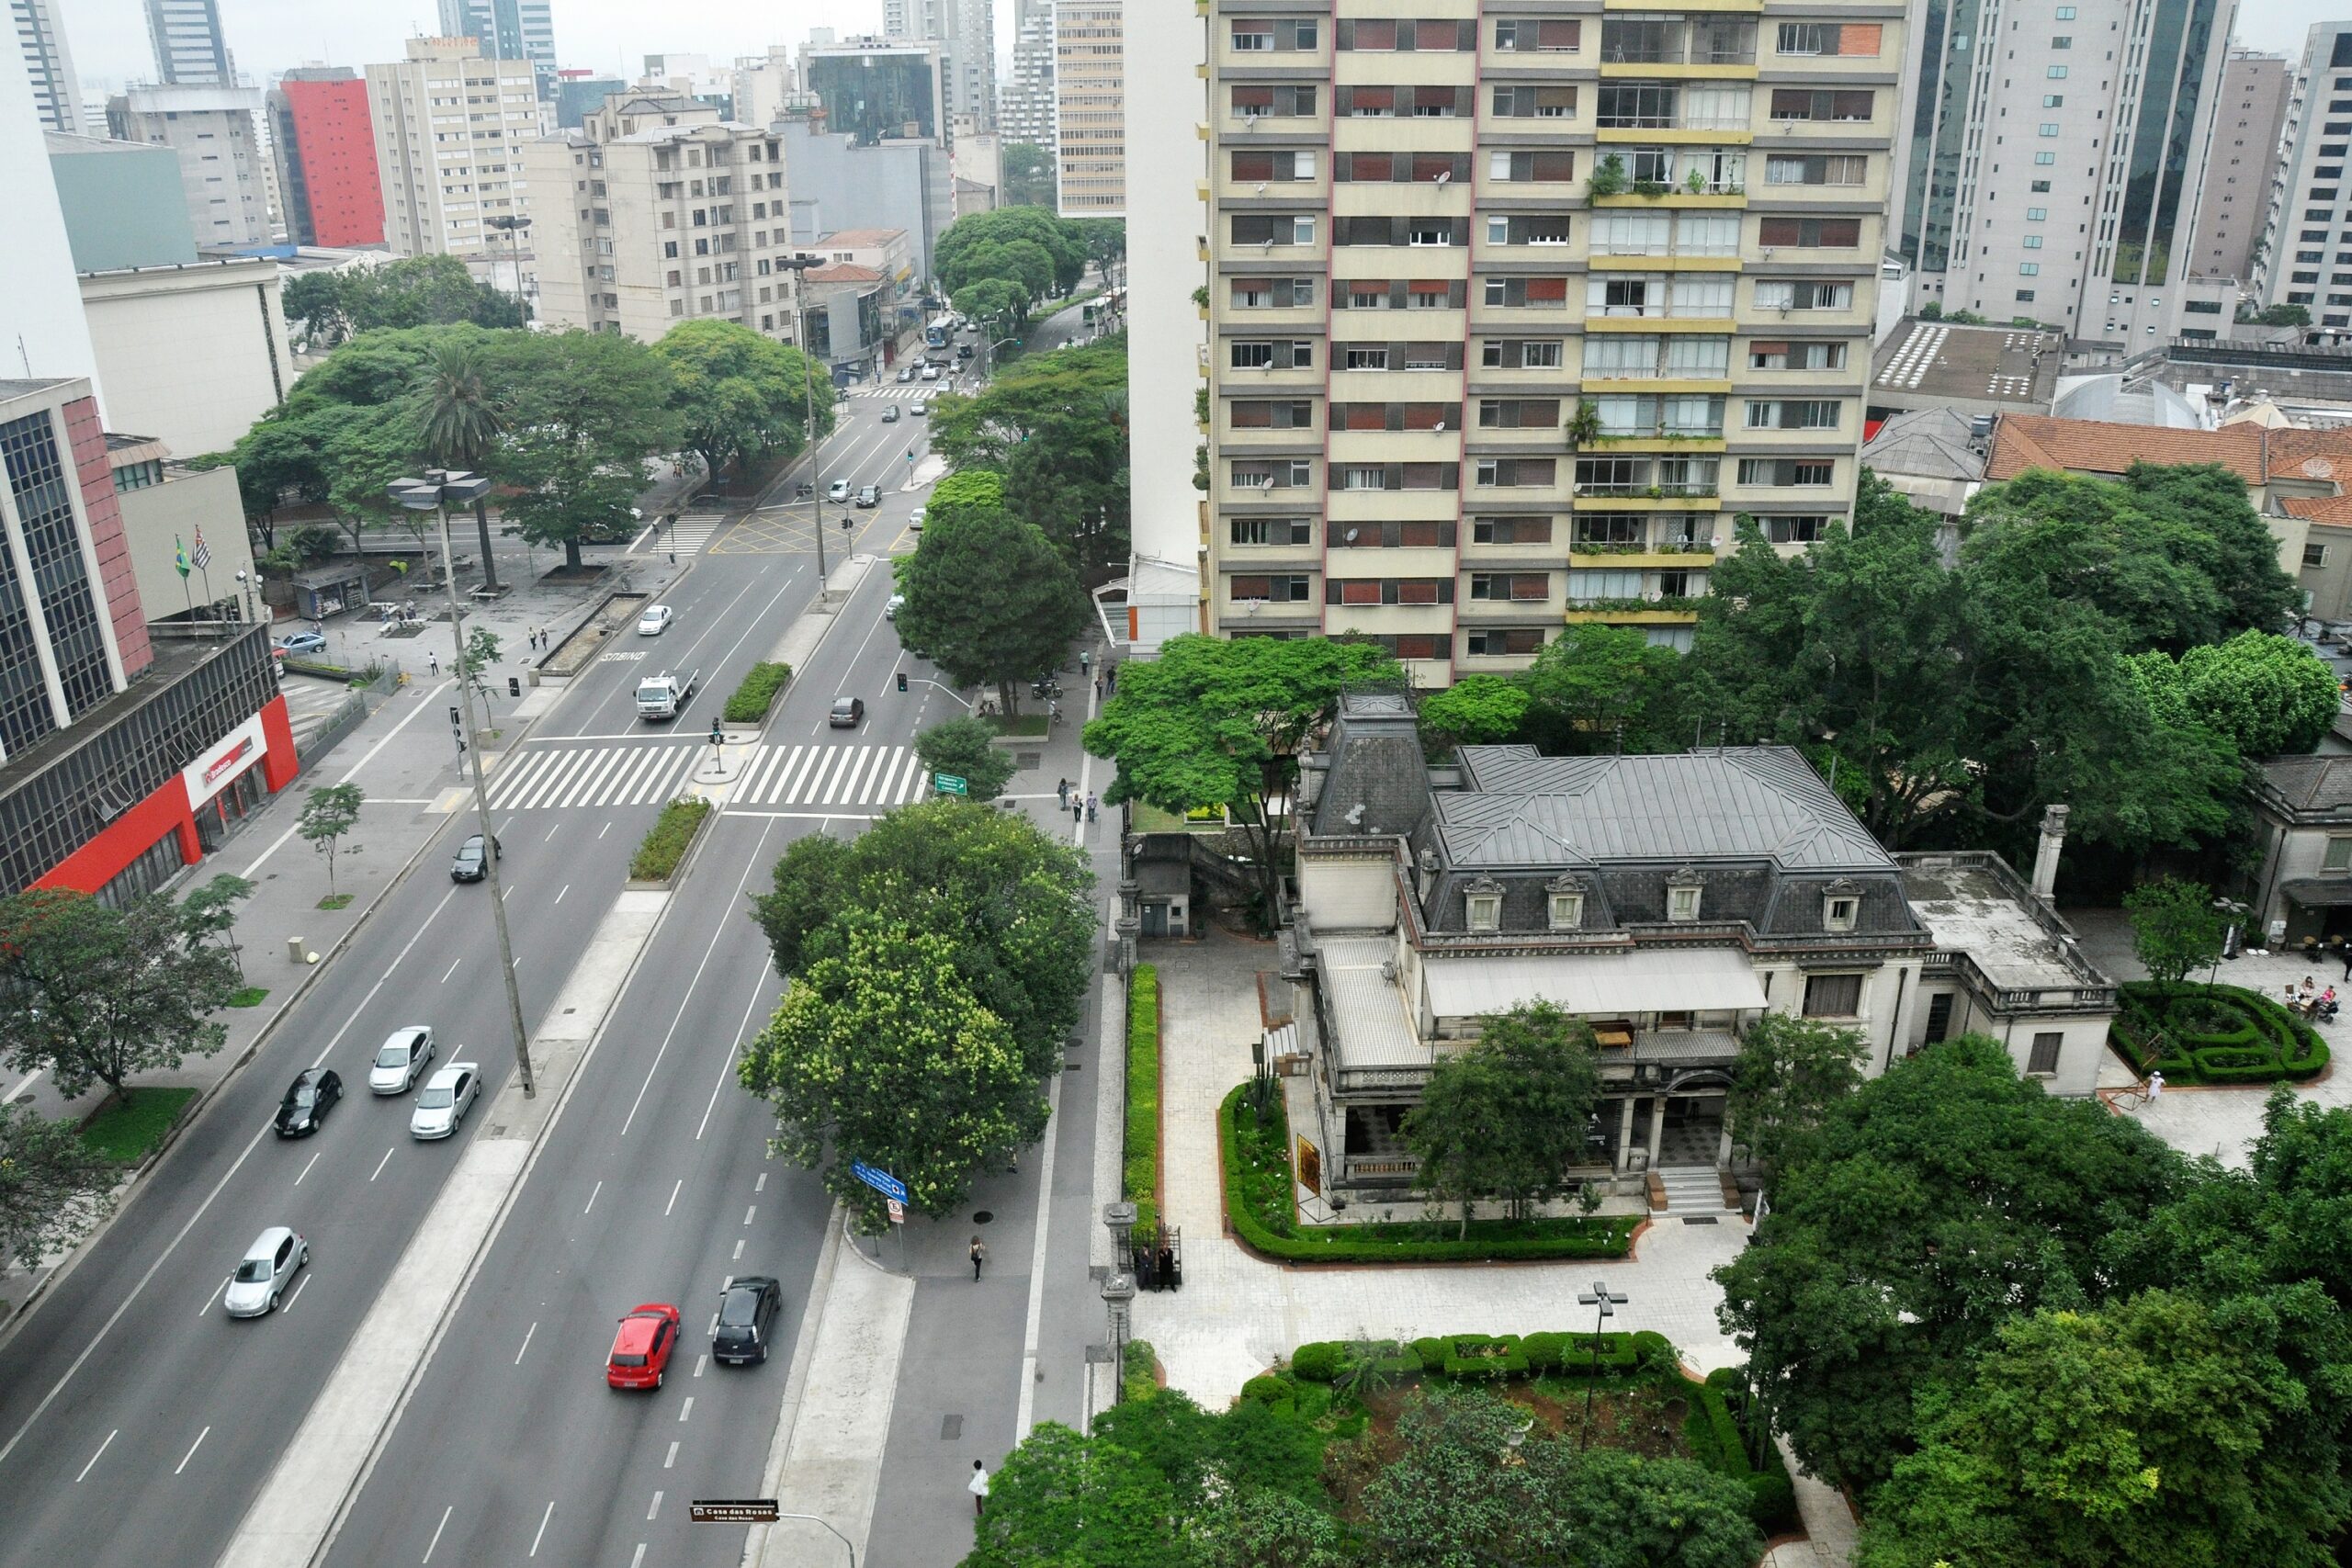 Casarão antigo contrasta com prédios modernos em região movimentada de São Paulo